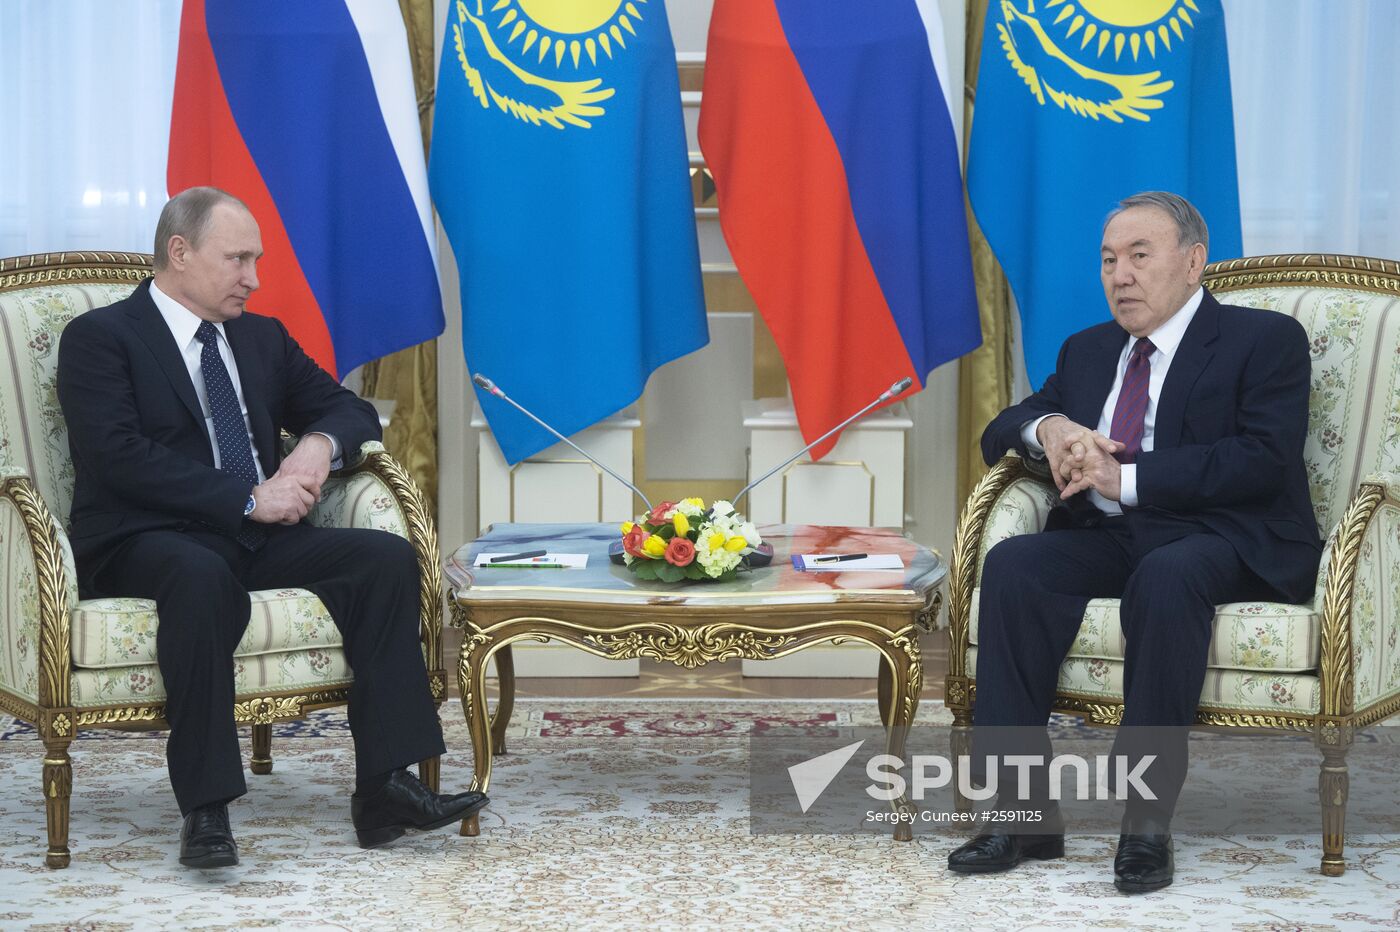 Vladimir Putin visits Kazakhstan